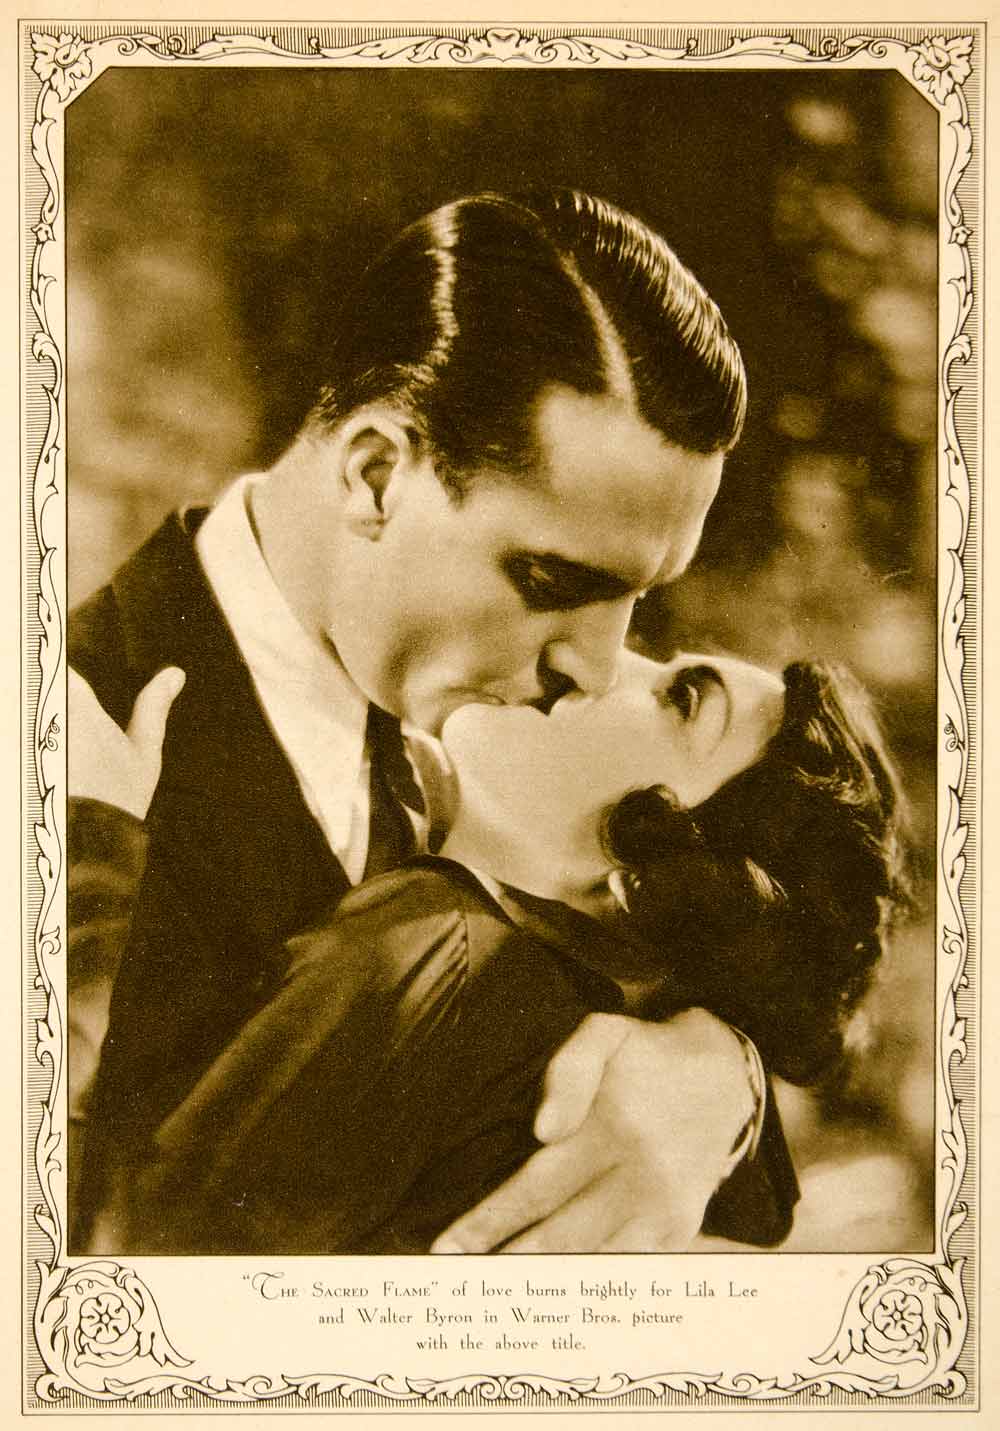 1930 Rotogravure Lila Lee Walter Byron Warner Bros Sacred Flame Kiss On SBM1